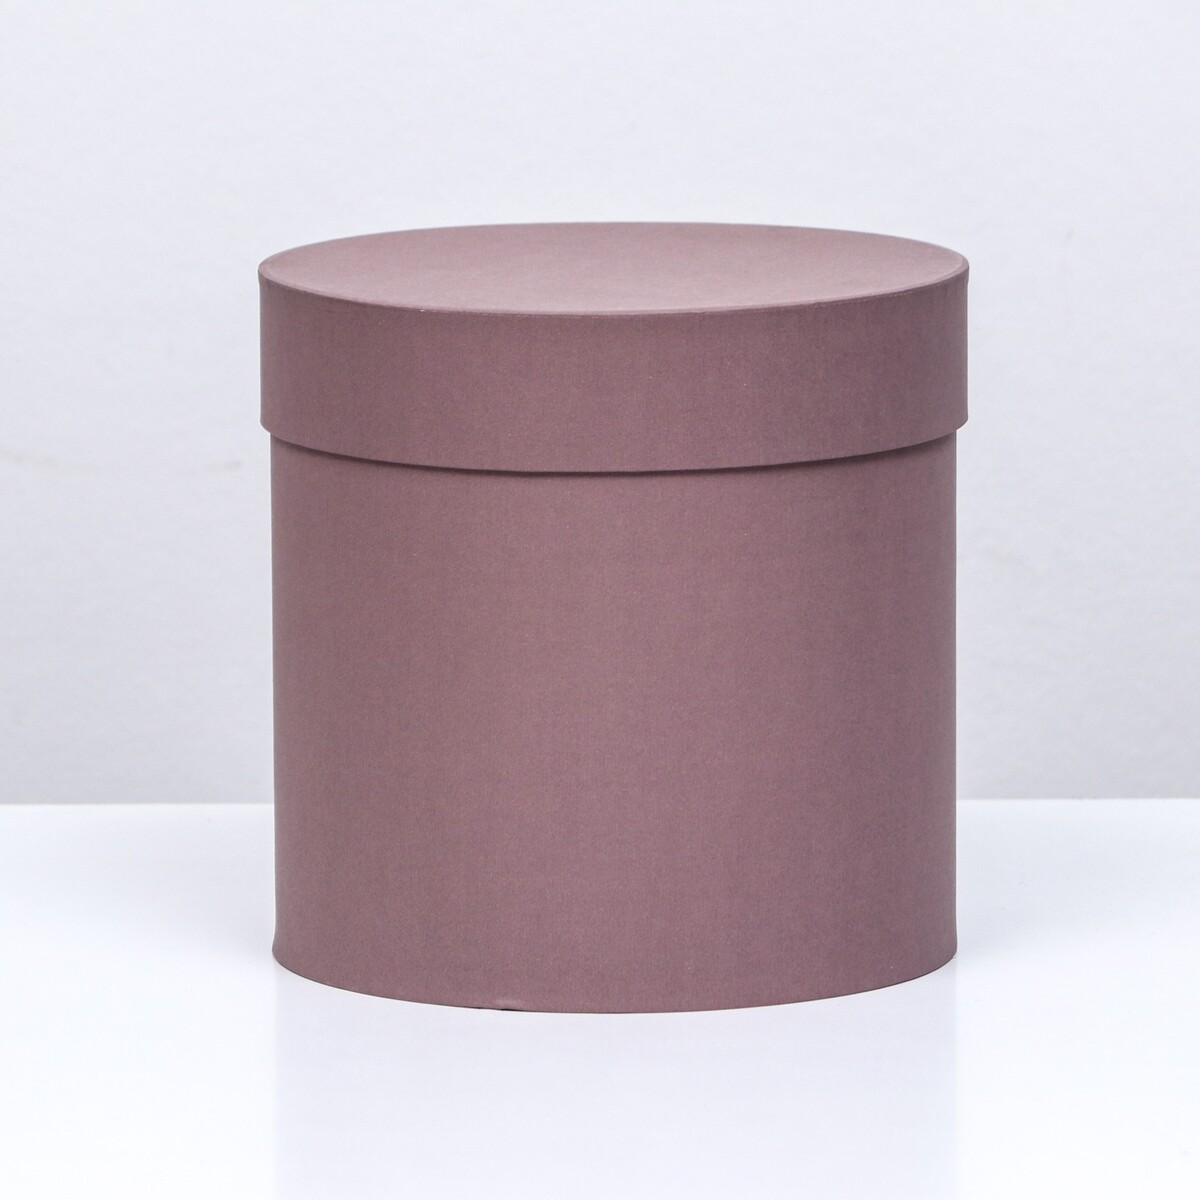 Шляпная коробка кофейная, 18 х 18 см зубочистки из березы magistro 300 шт в индивидуальной упаковке картонная коробка